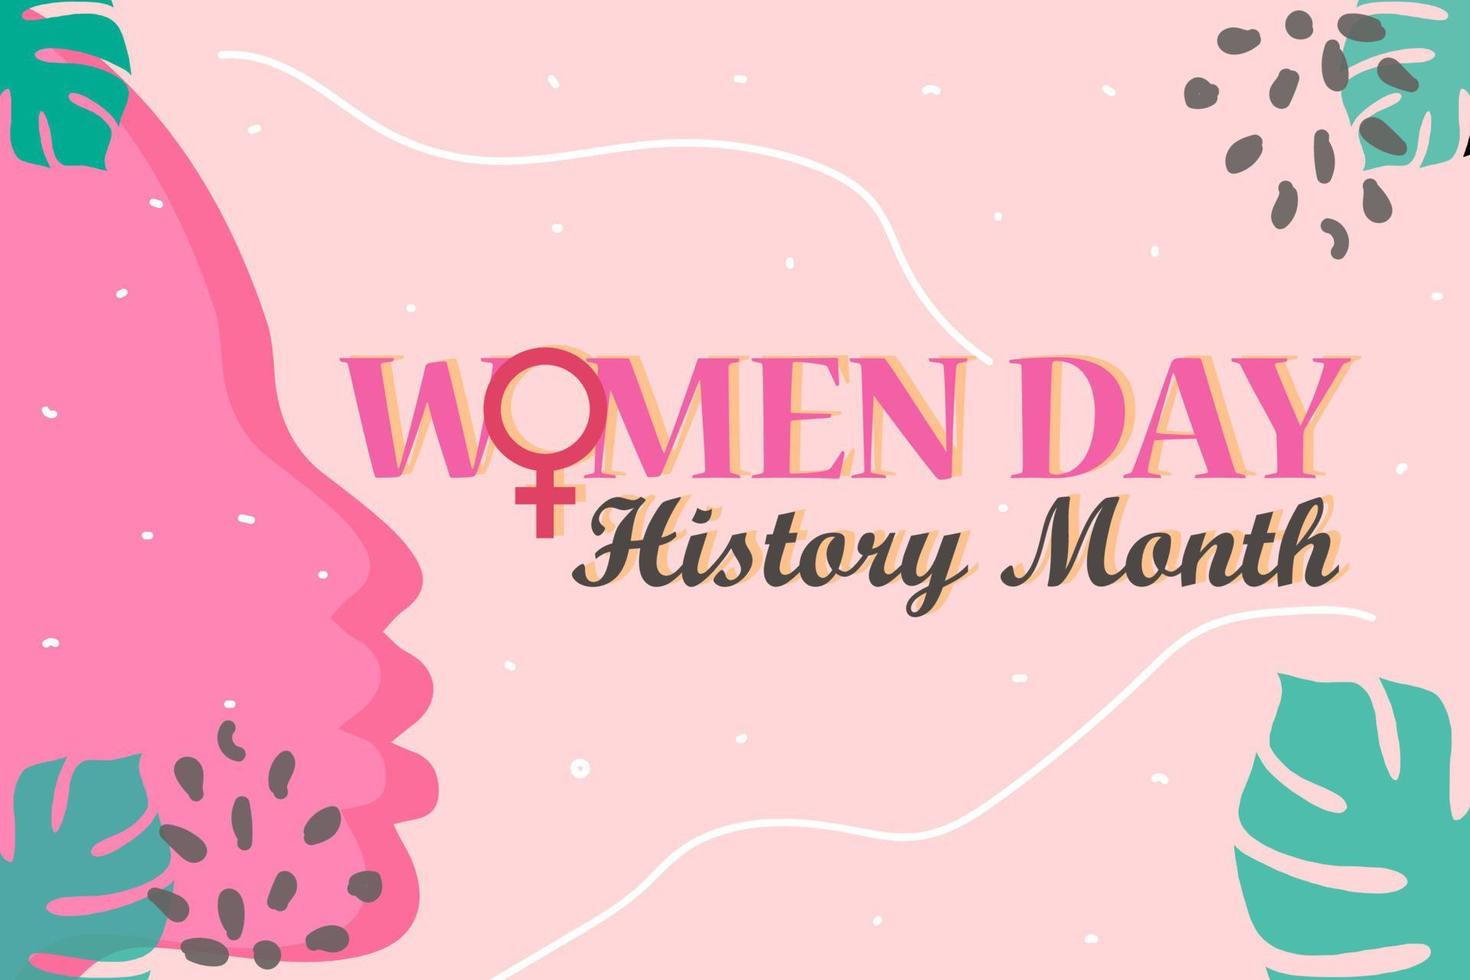 kvinnors historia månad är observerats varje år i Mars, vektor